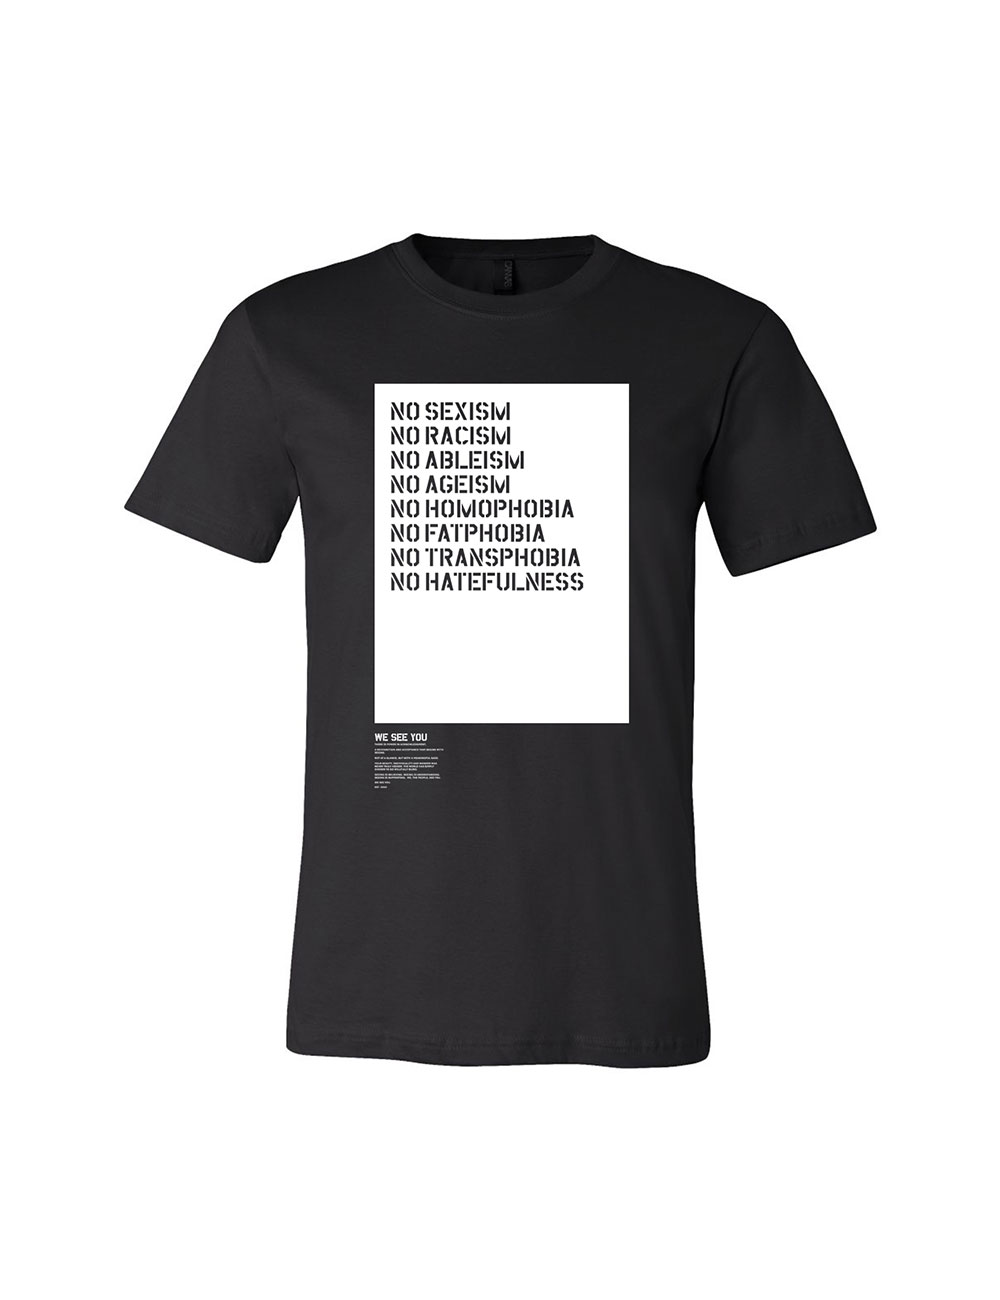 Afropunk - Official Merch Shop - T-Shirts - No Hate Tee